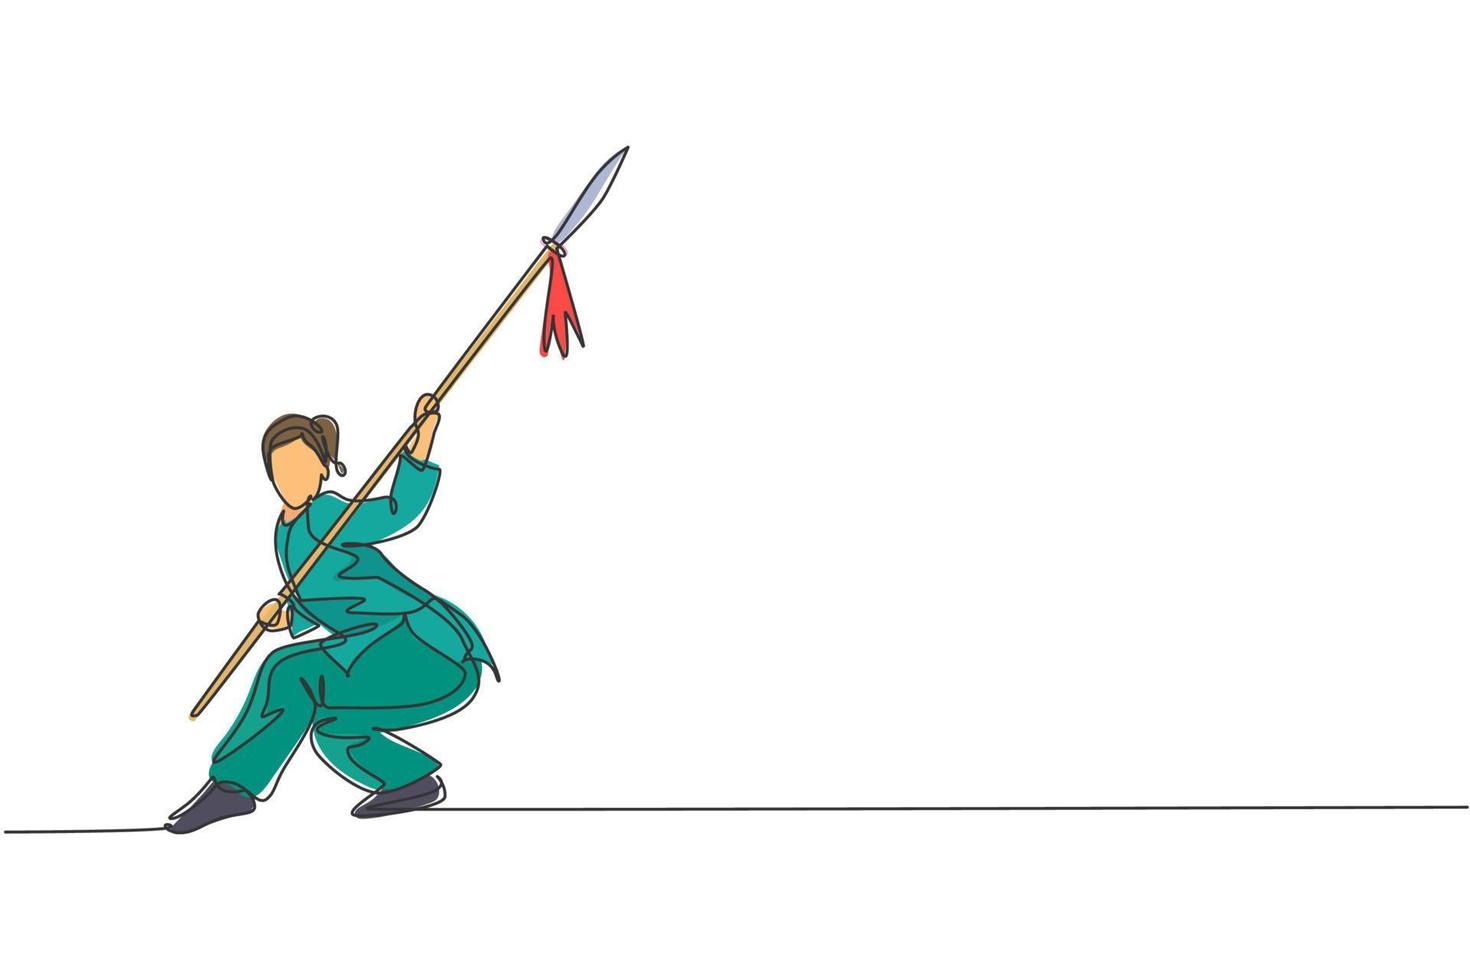 enda kontinuerlig linjeteckning av ung kvinna wushu fighter, kung fu mästare i uniform träning med spjut på dojo center. slåss tävling koncept. trendiga en rad rita design vektorillustration vektor